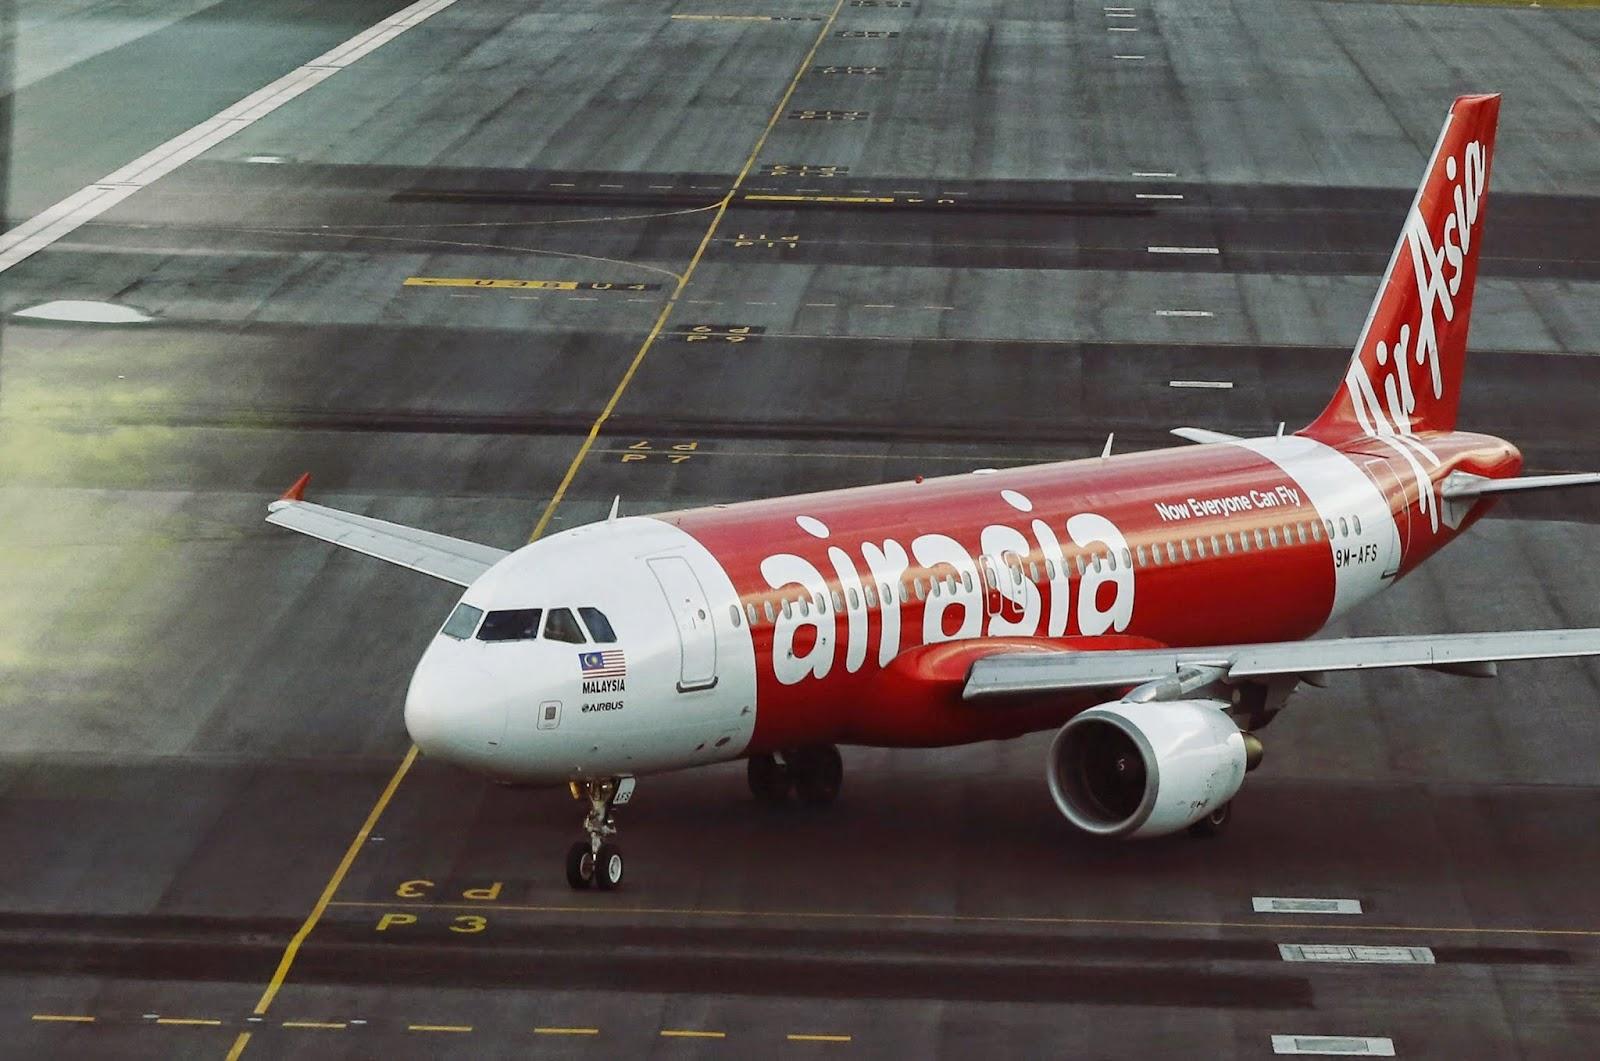 MONDE > Un vol AirAsia disparait entre l'Indonésie et Singapour